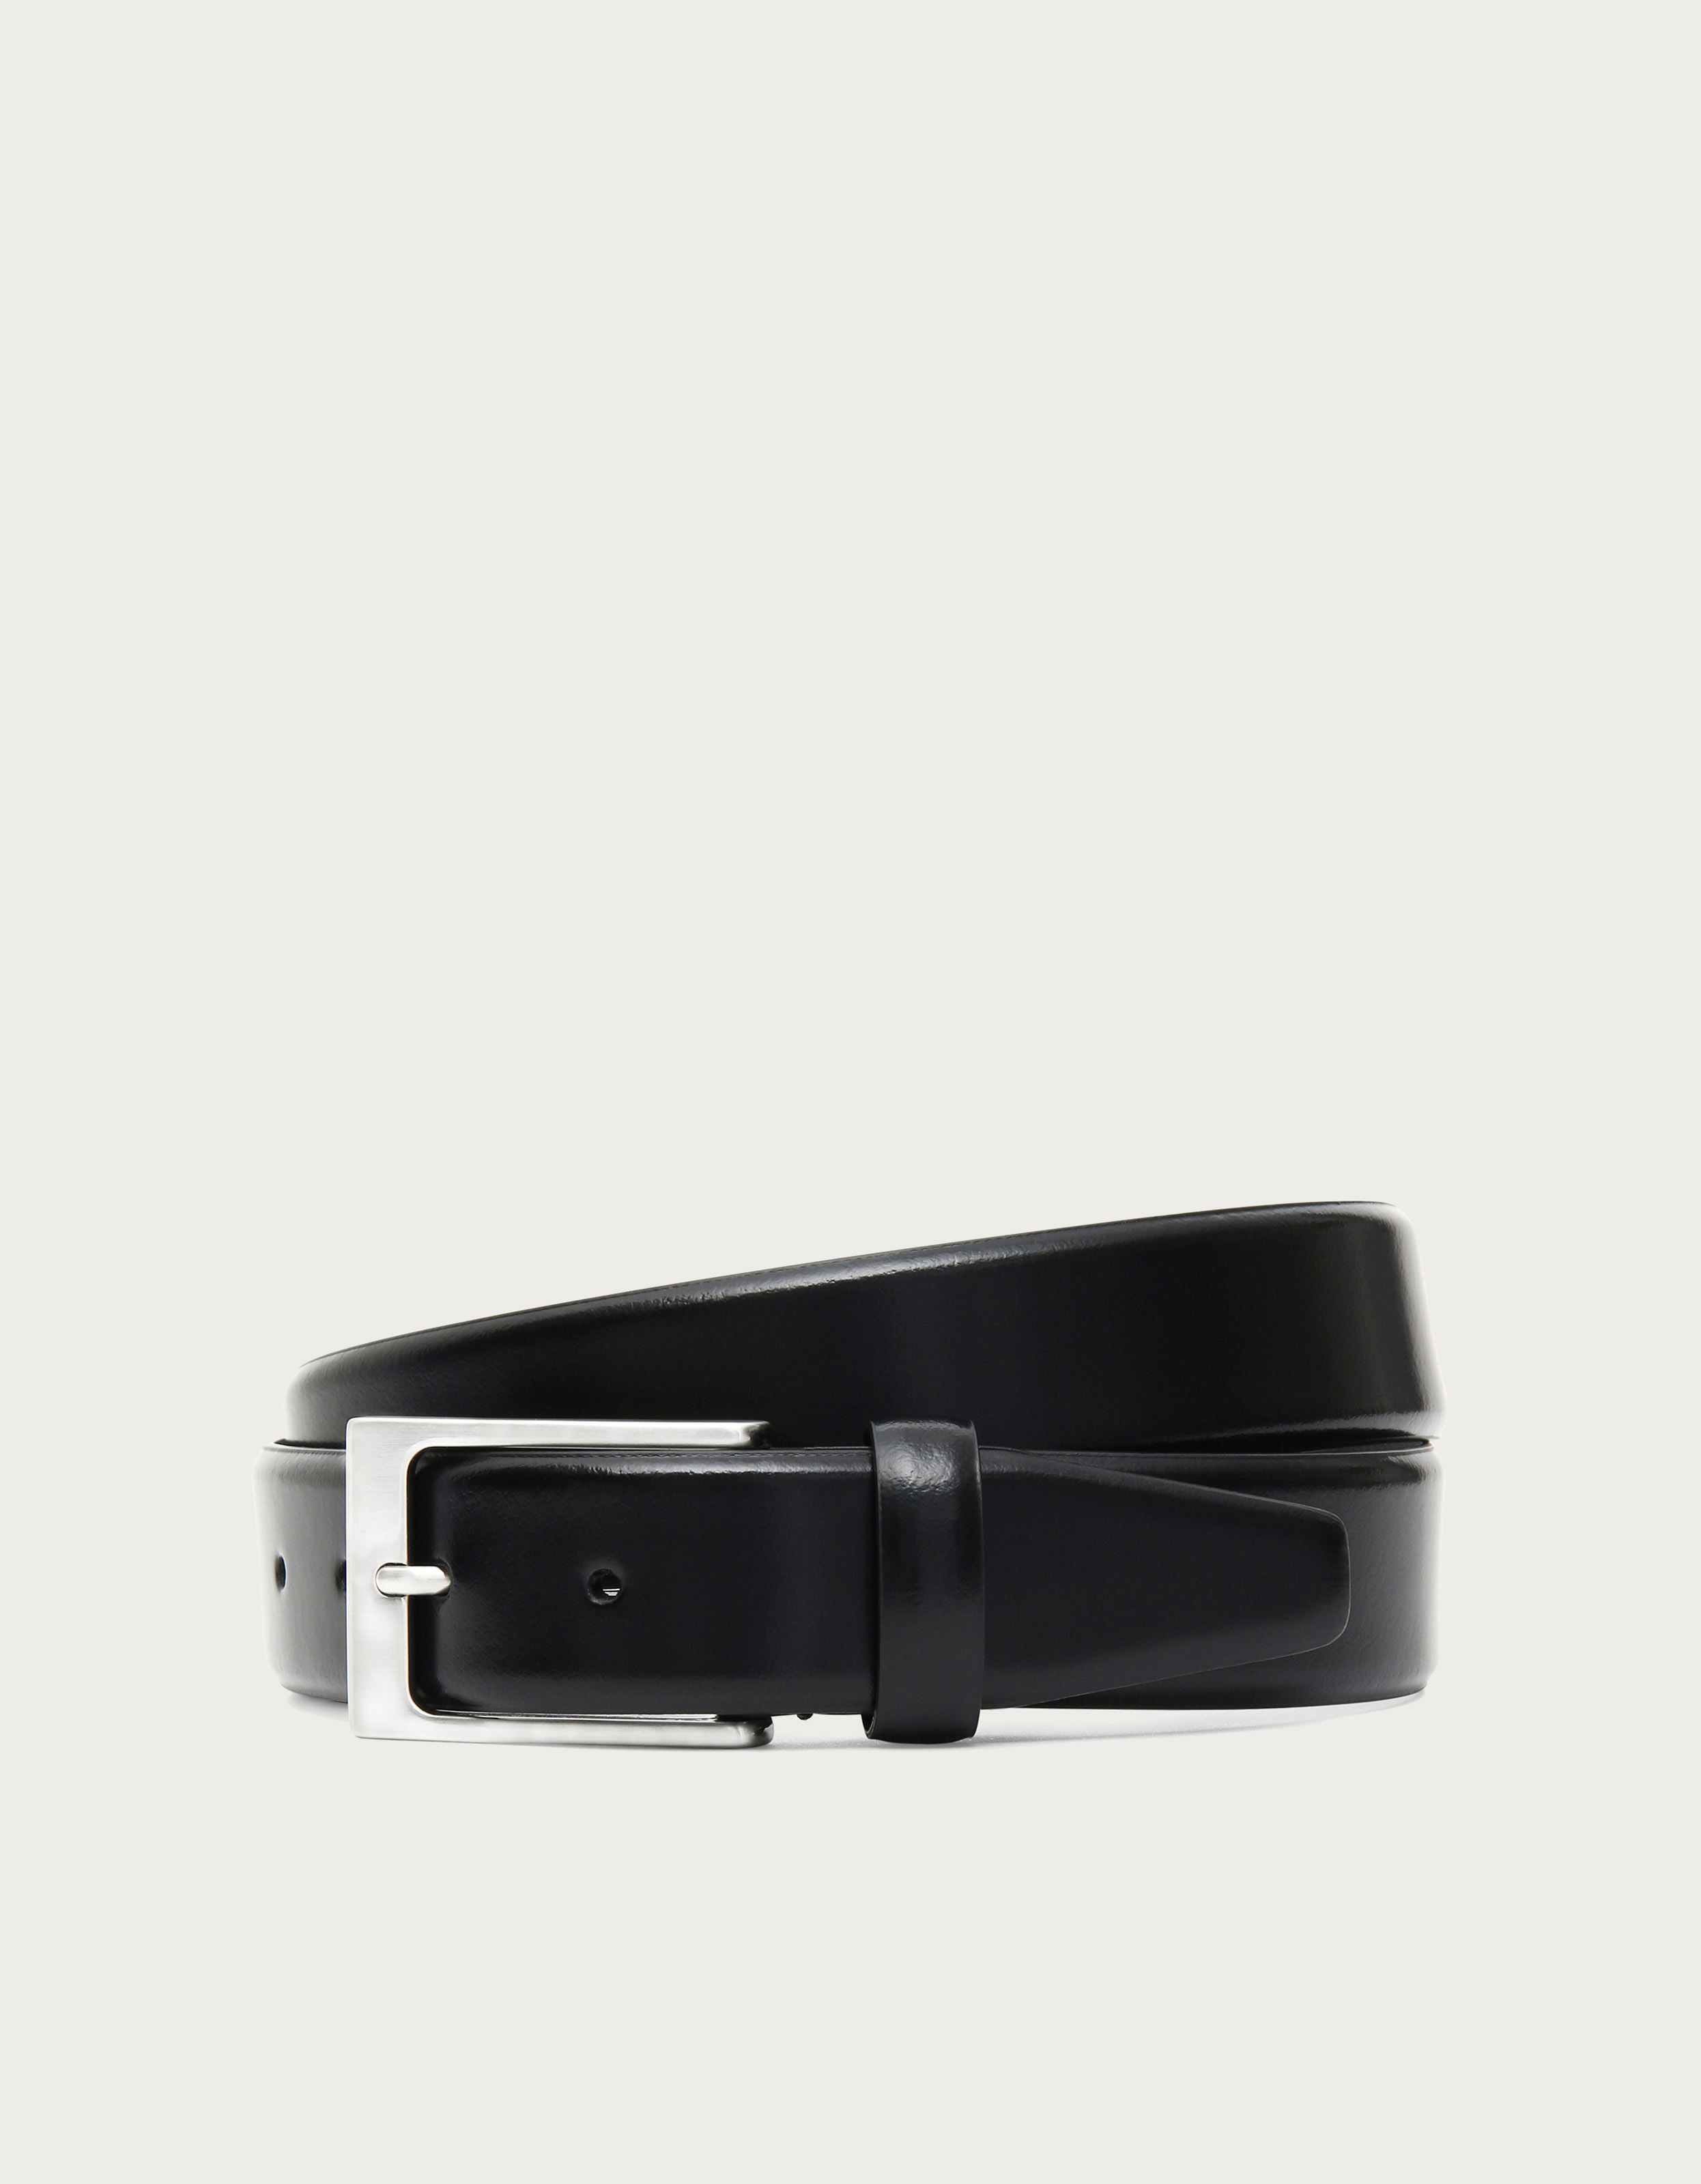  VANNANBA Designer Belts for Men,Leather Dress Casual Belt with  Single Prong Buckle(28-34 Waist Adjustable,Black) : Everything Else